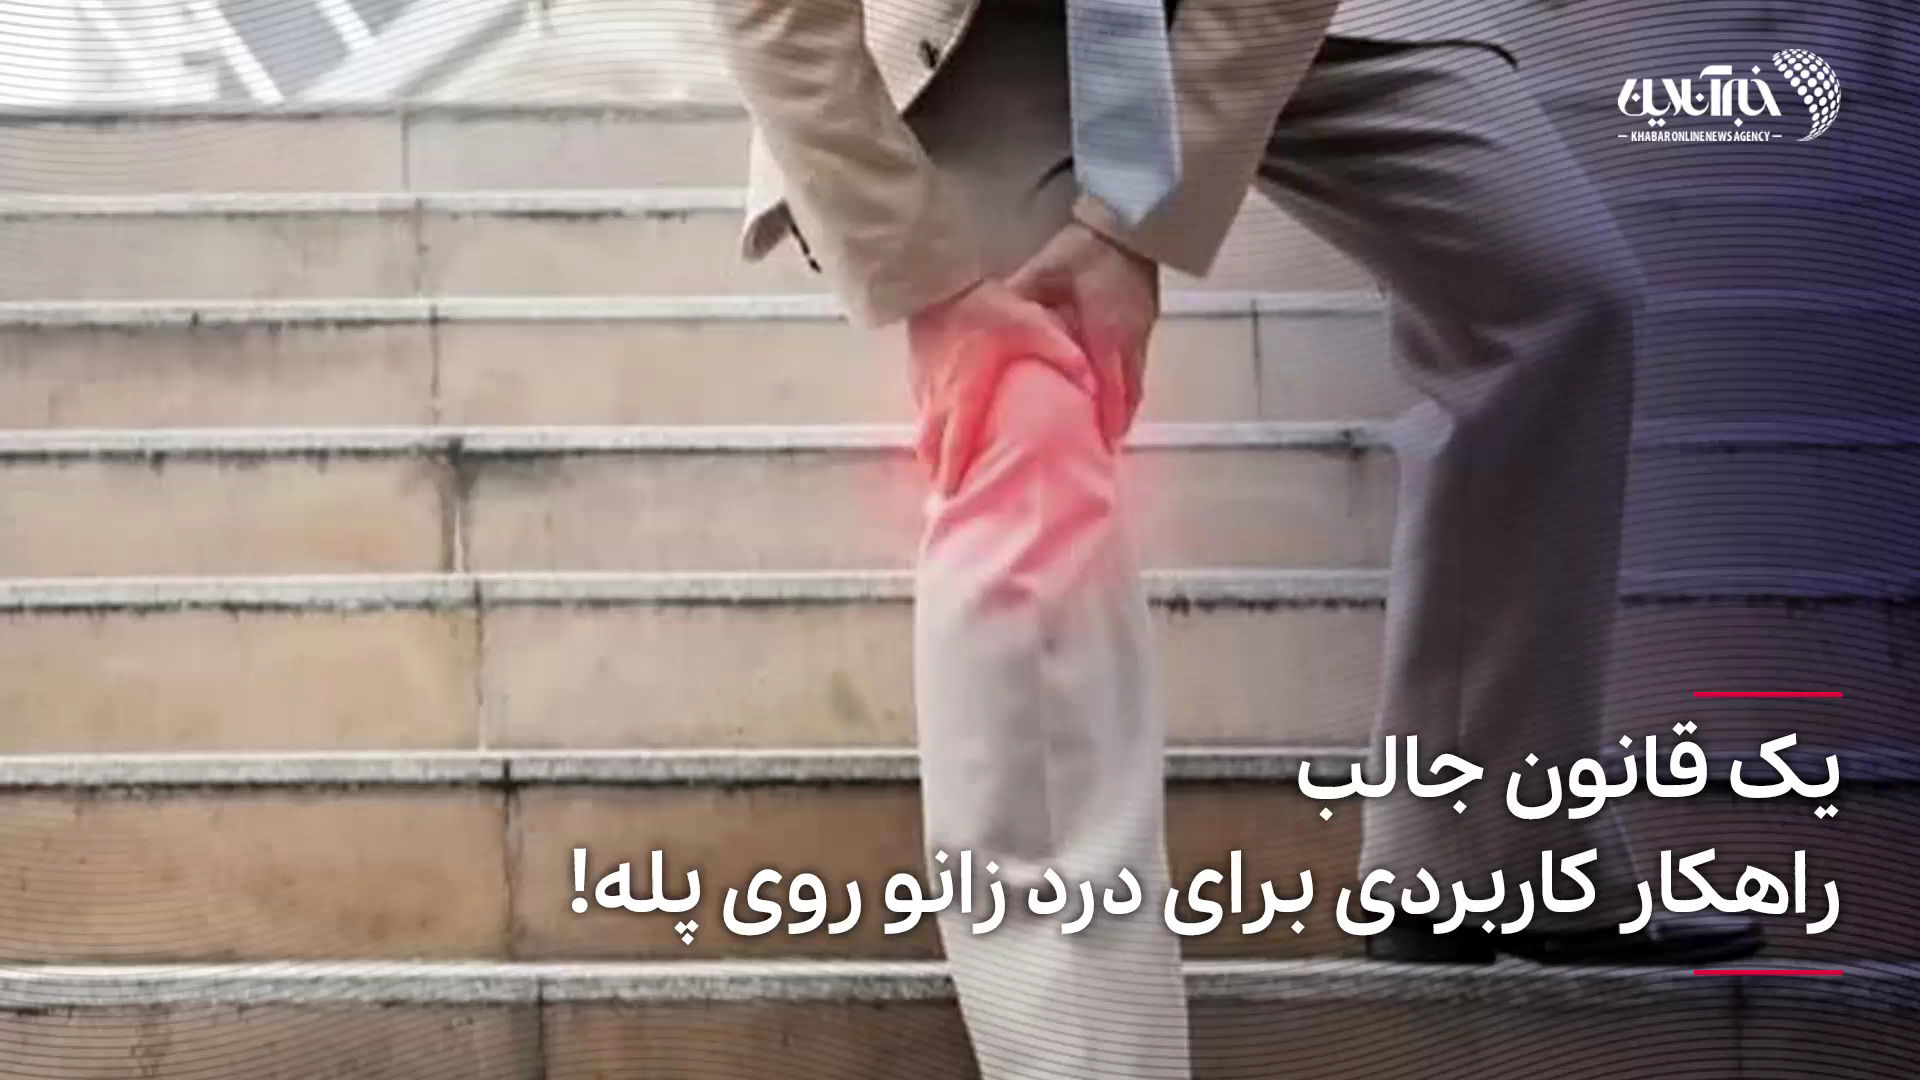  یک قانون جالب؛ راهکار کاربردی برای درد زانو روی پله!